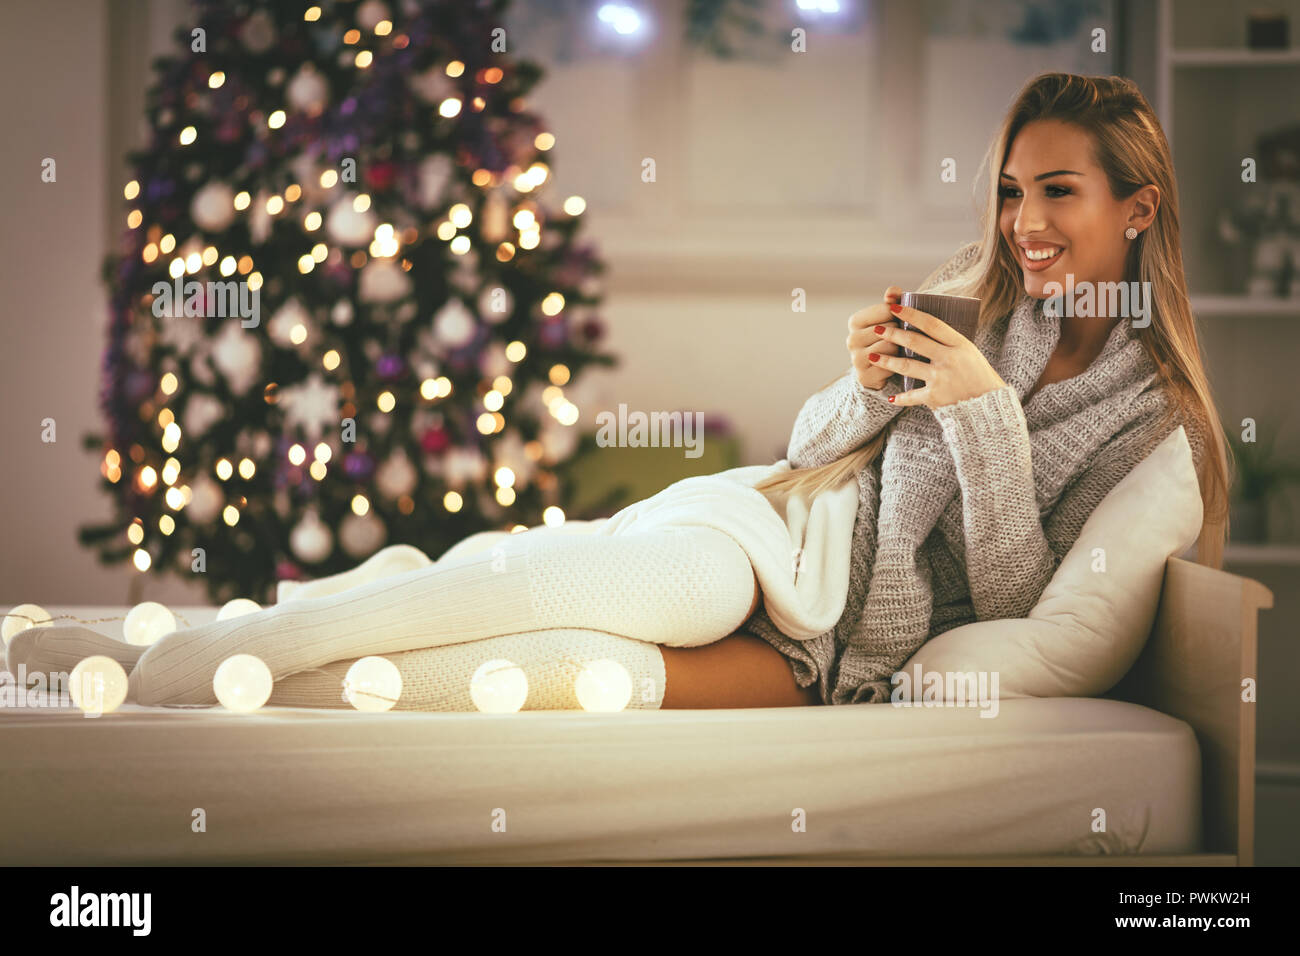 Süße junge lächelnde Frau mit Tasse Kaffee und Sitzen im Bett mit Weihnachten bubble Lights. Stockfoto